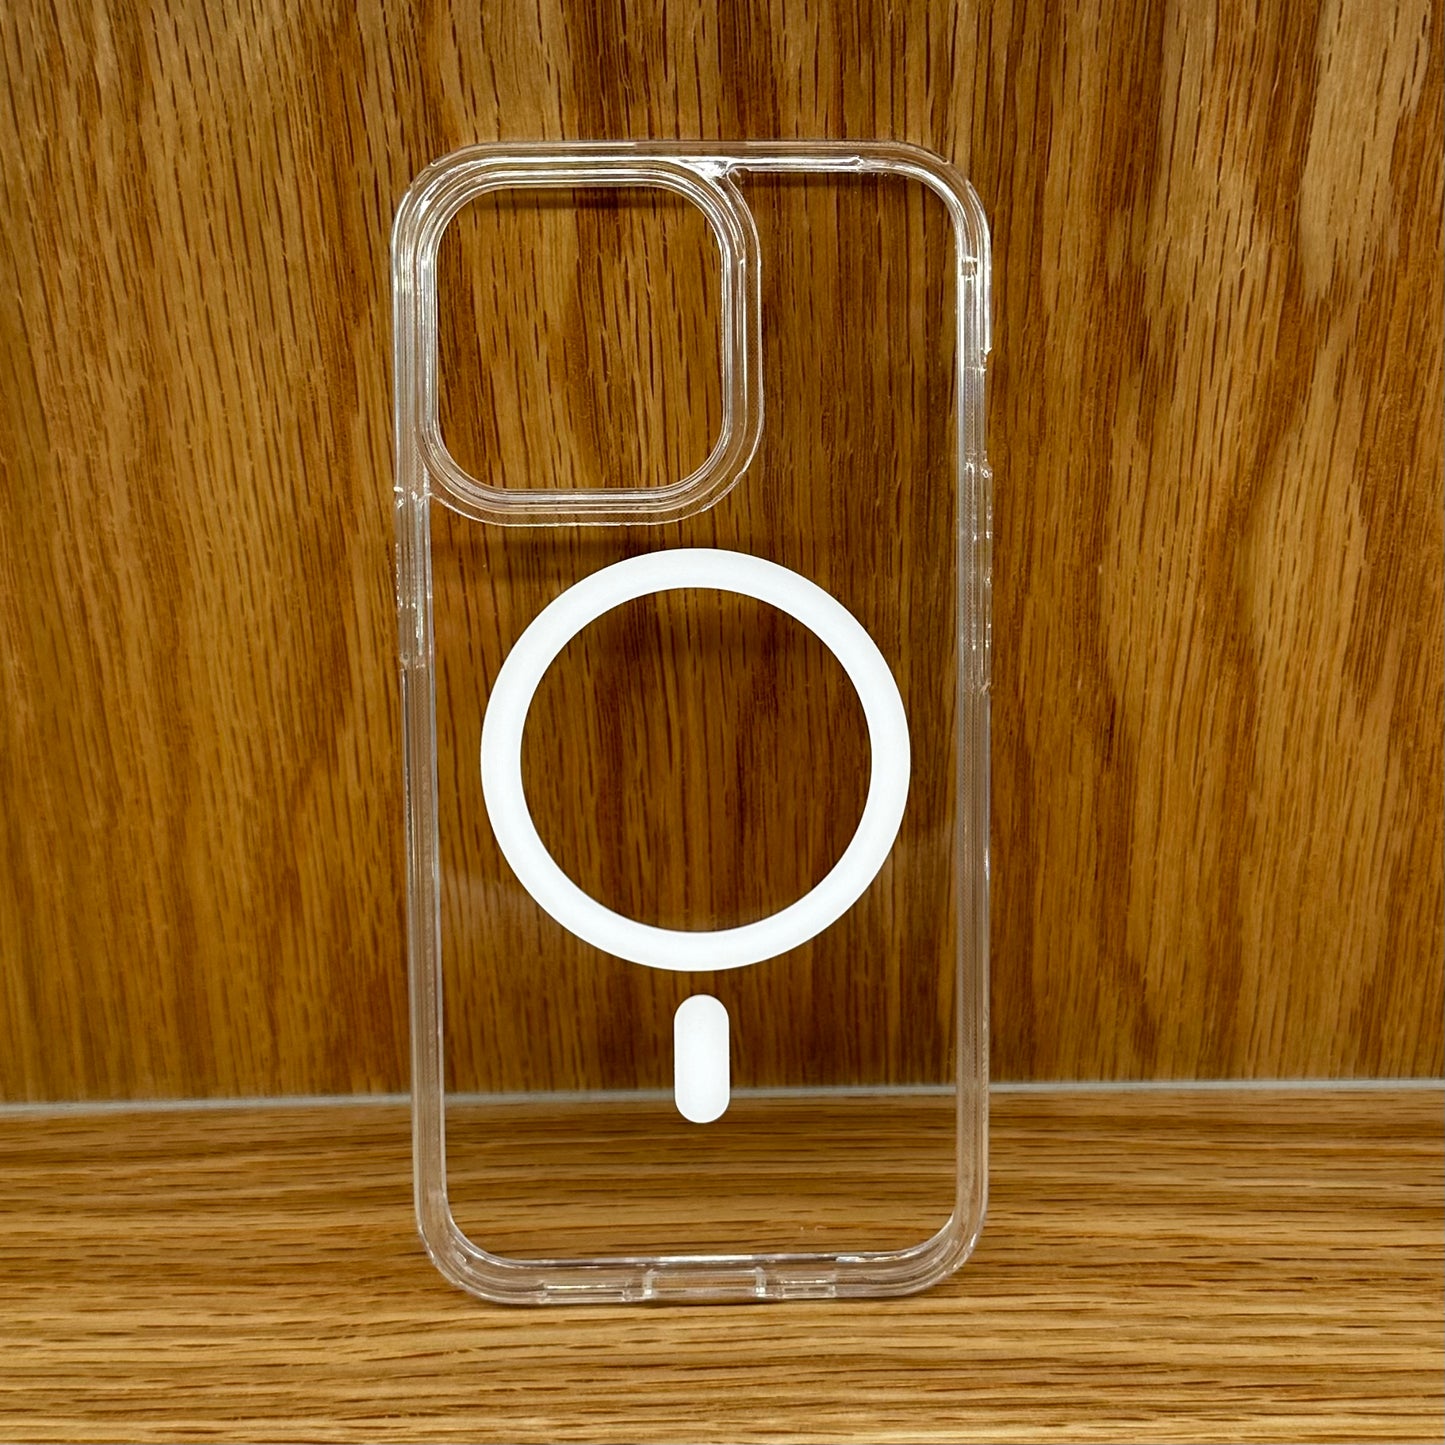 Spigen Series cases for Apple iPhones